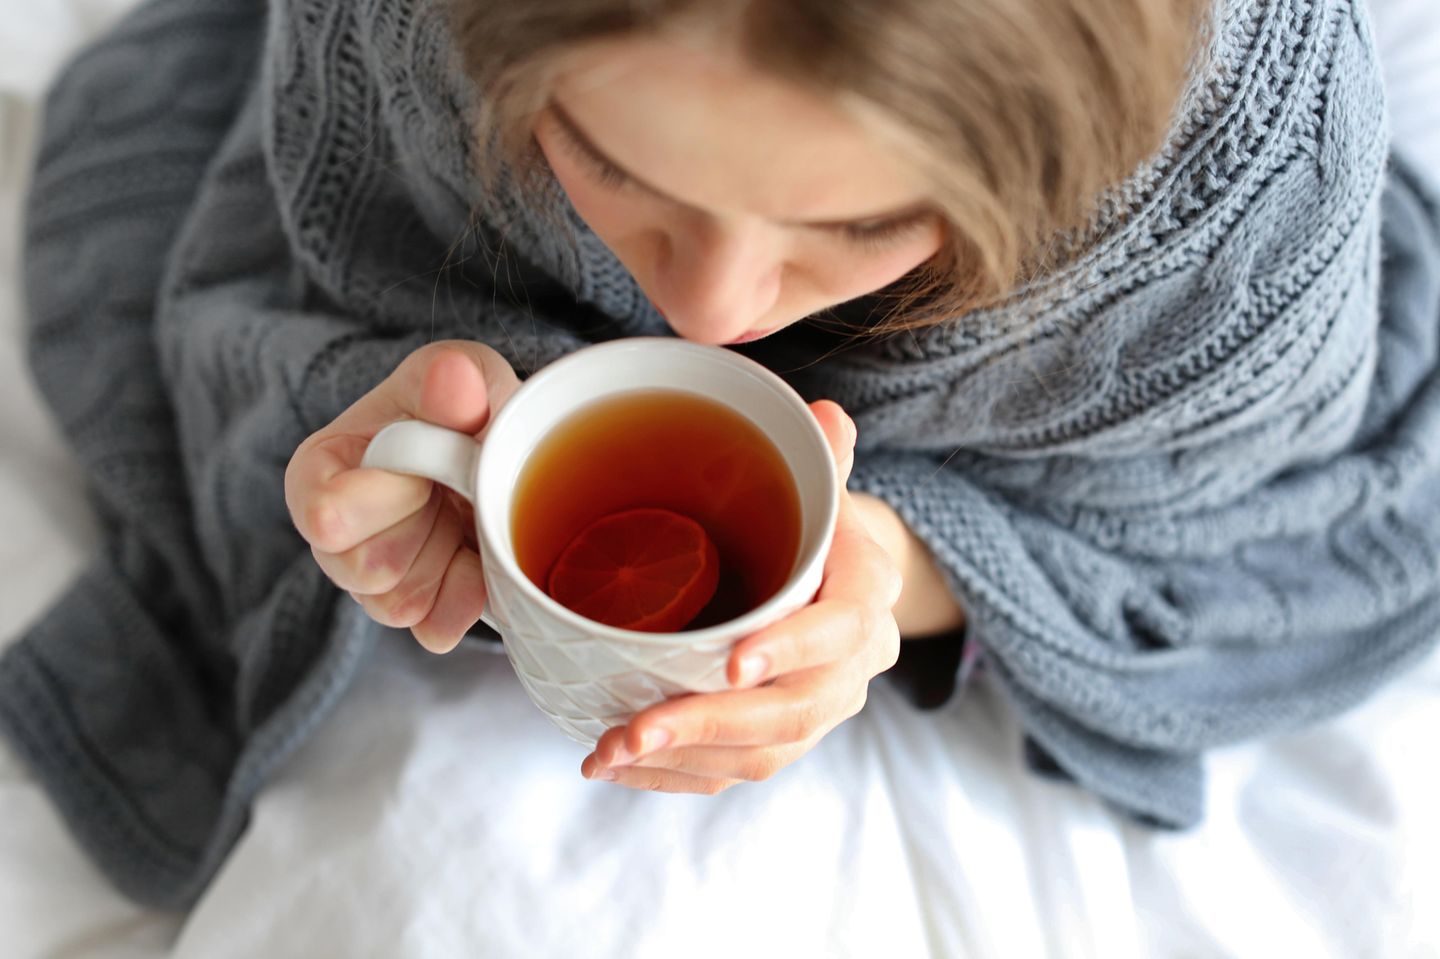 Hausmittel bei Blasenentzündung: Frau in Decke eingehüllt trinkt eine Tasse Tee